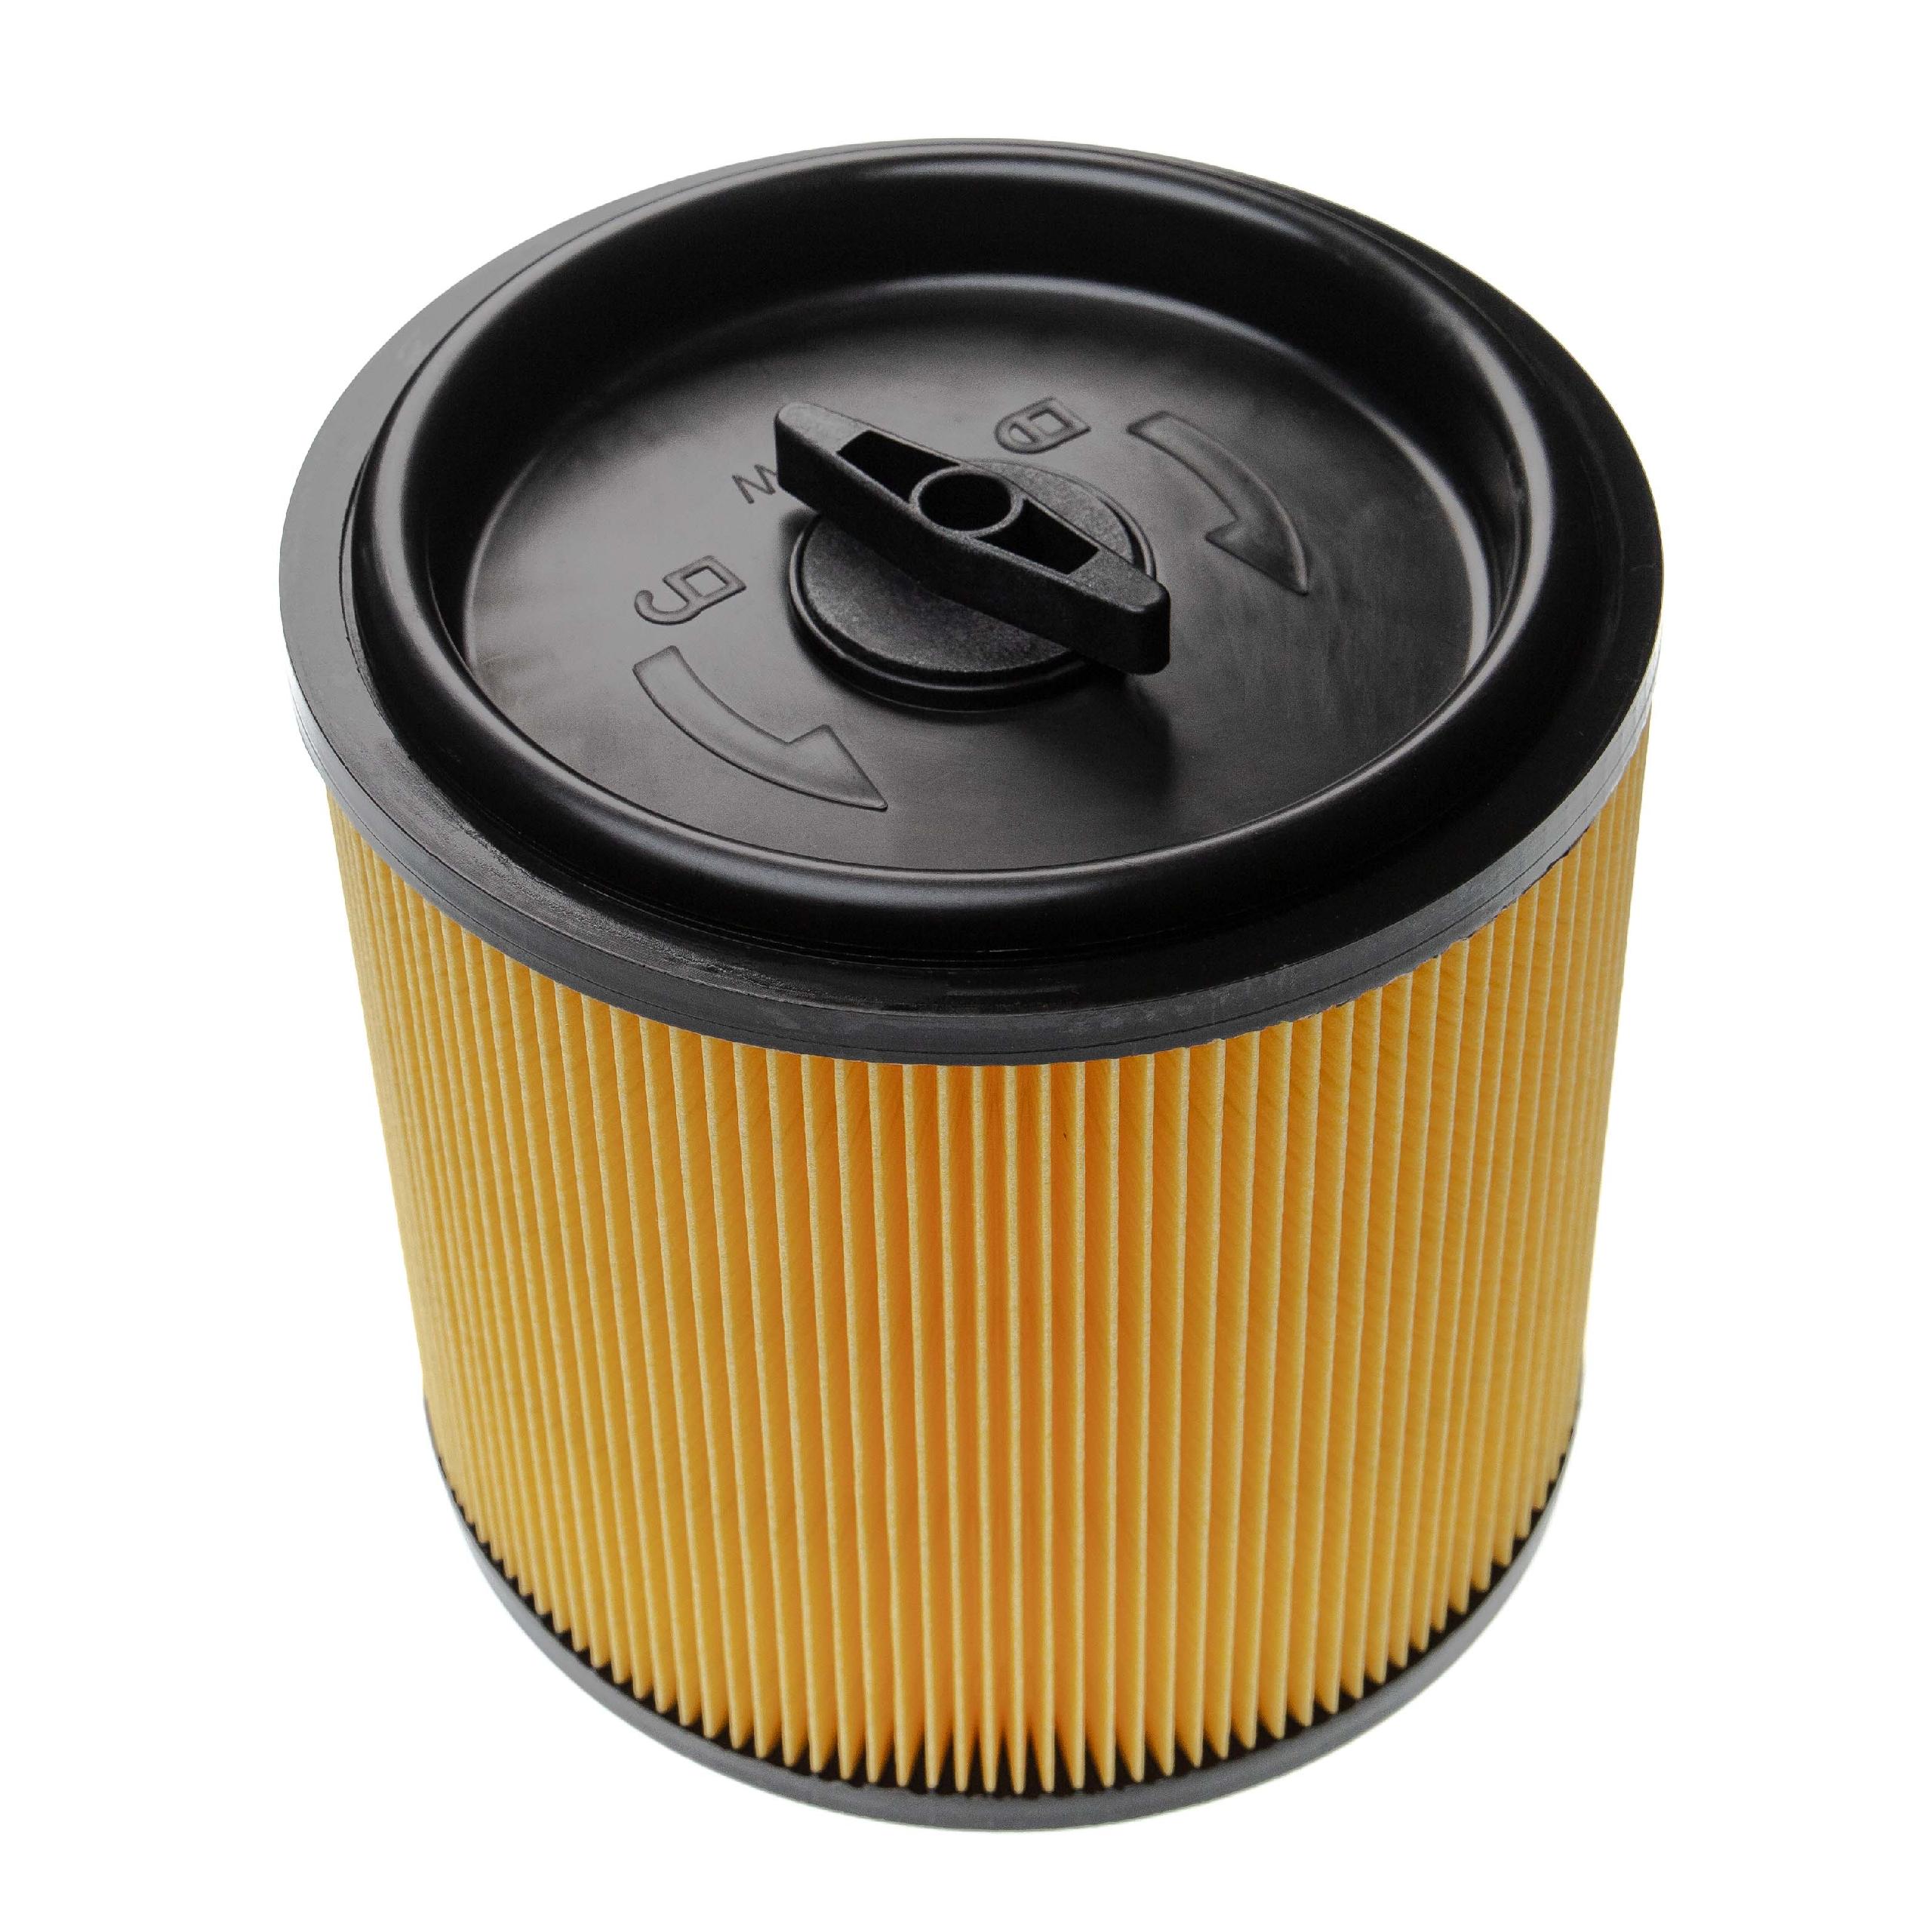 Vhbw filtro a pieghe piatte compatibile con Lidl / Parkside PWD 20 A1, 25  A2, 30 B1 aspiratore umido/secco - Cartuccia filtrante, nero / giallo